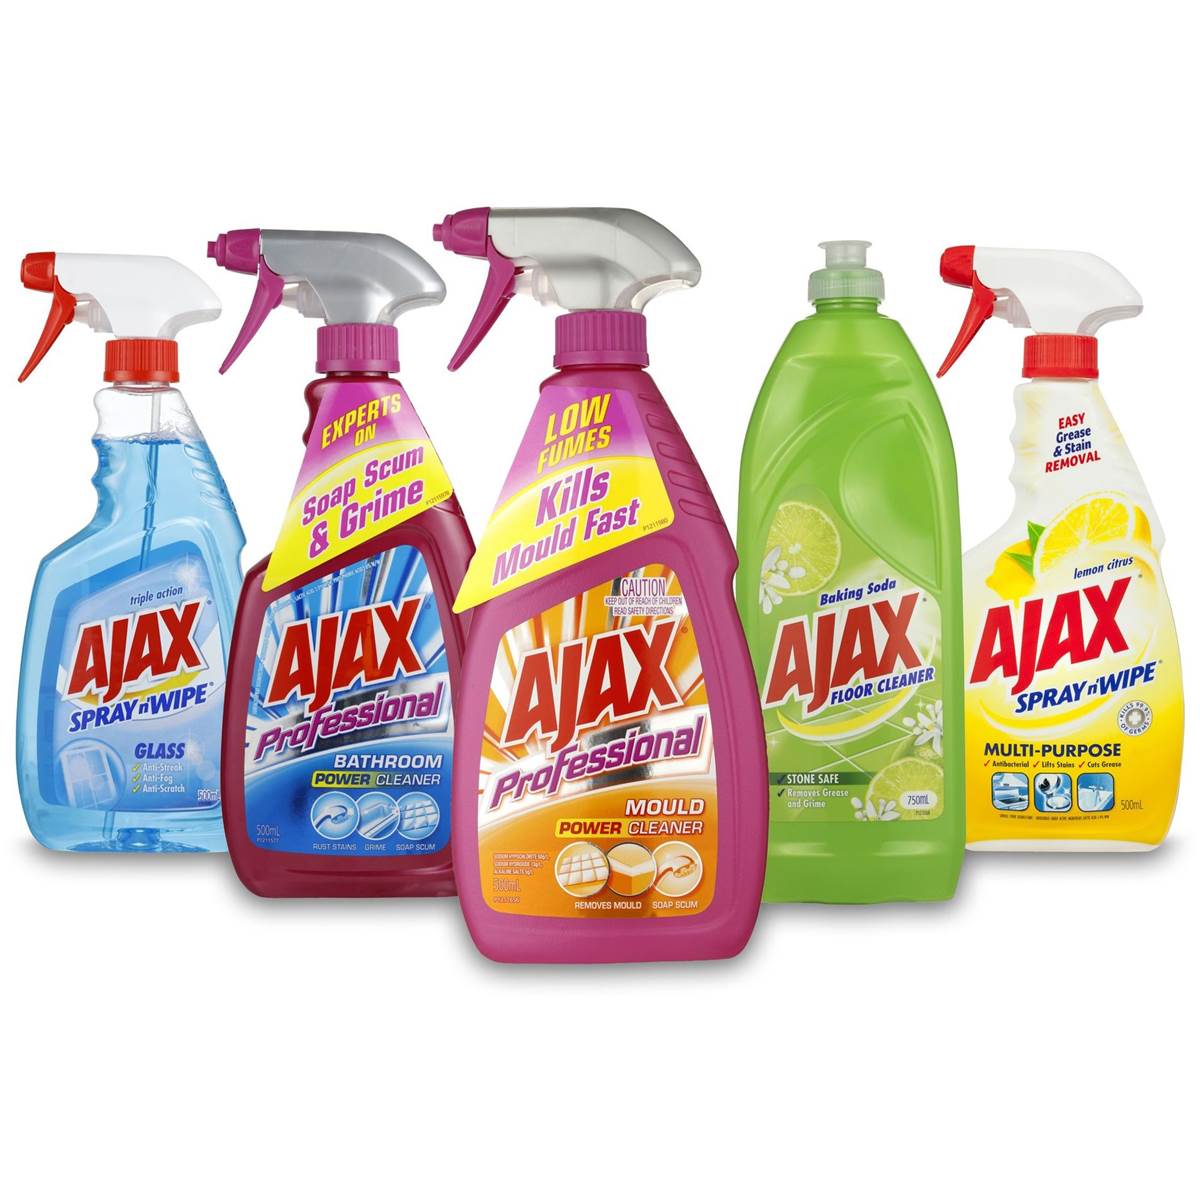 Ajax Cleaner / Ajax Spray N' Wipe Glass Cleaner Trigger Pack 500mL